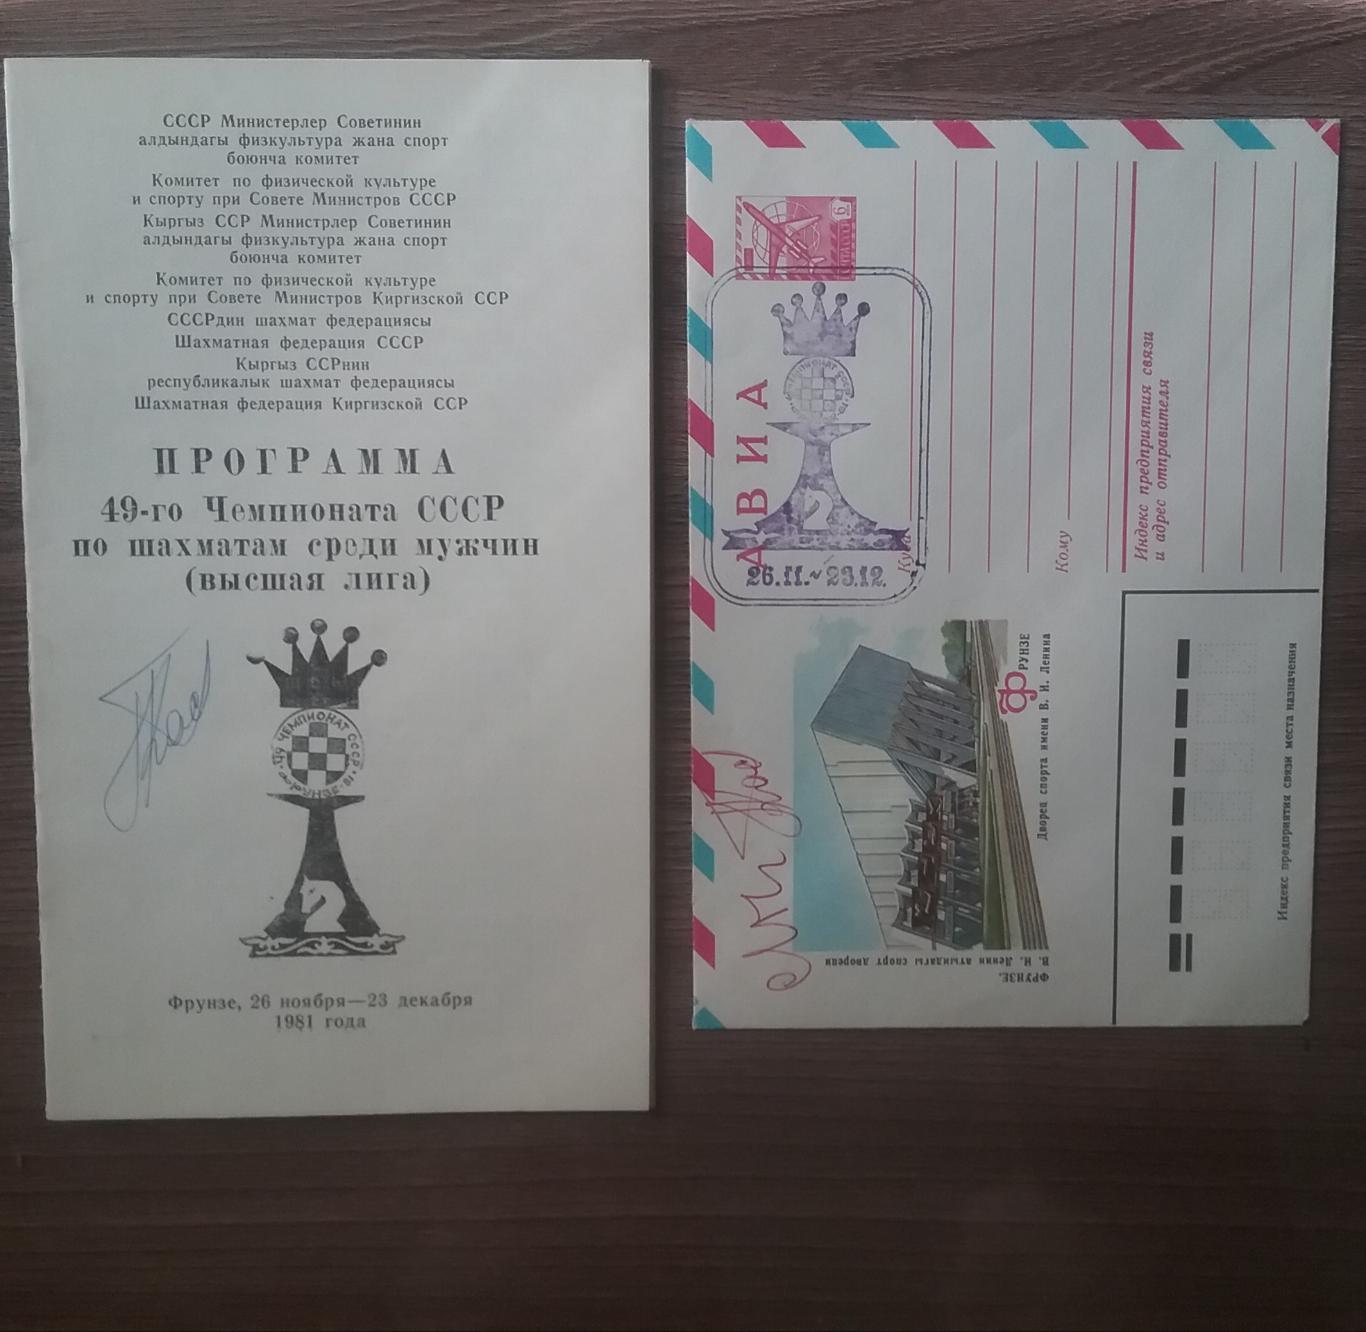 Автографы шахматистов-49-ый Чемпионат СССР по шахматам (высшая лига)1981г